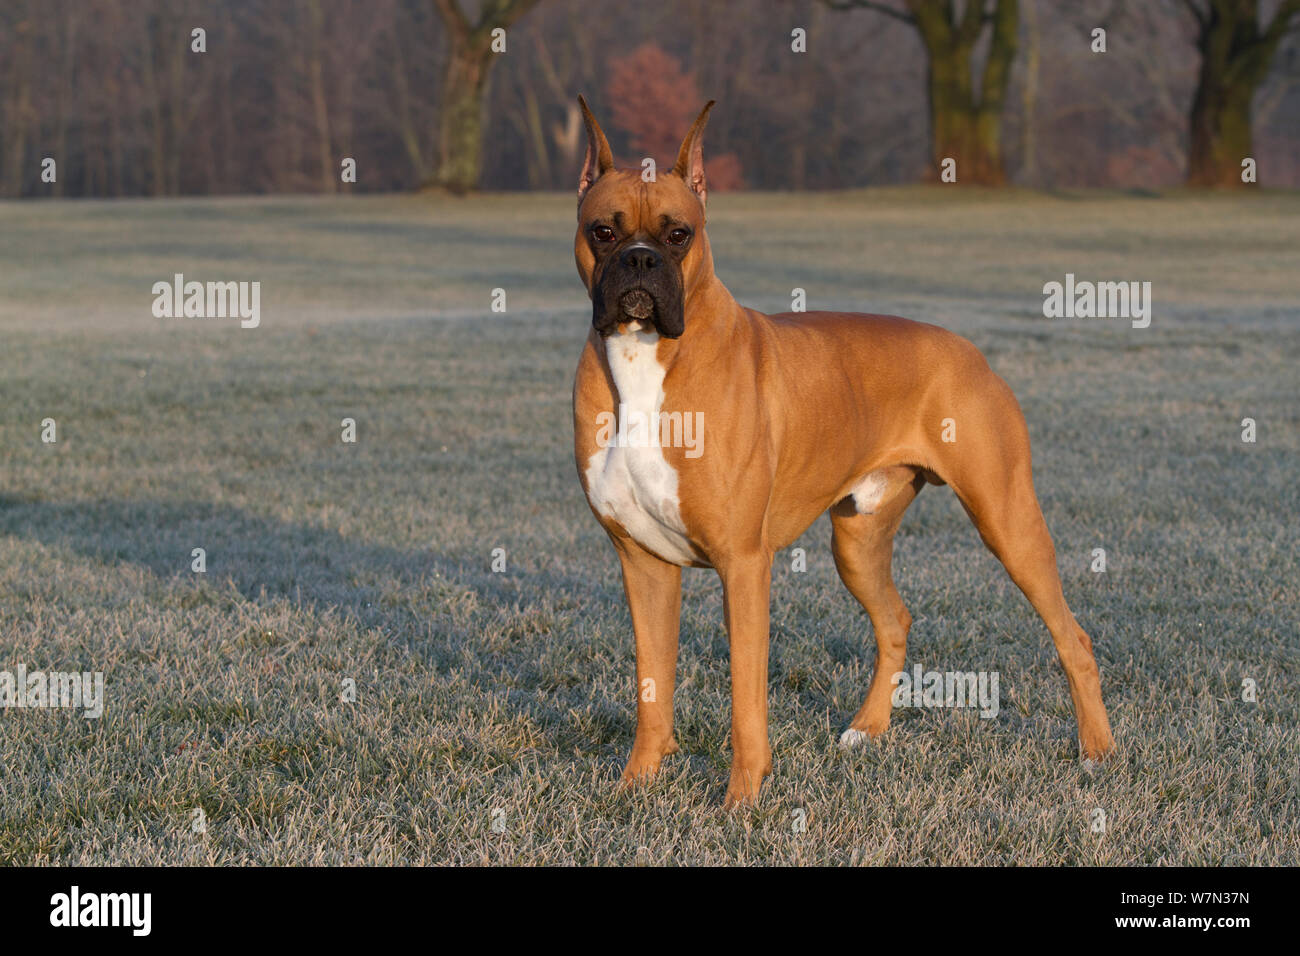 Boxer Hund mit kupierten Ohren, Porträt auf eisige Gras, USA  Stockfotografie - Alamy